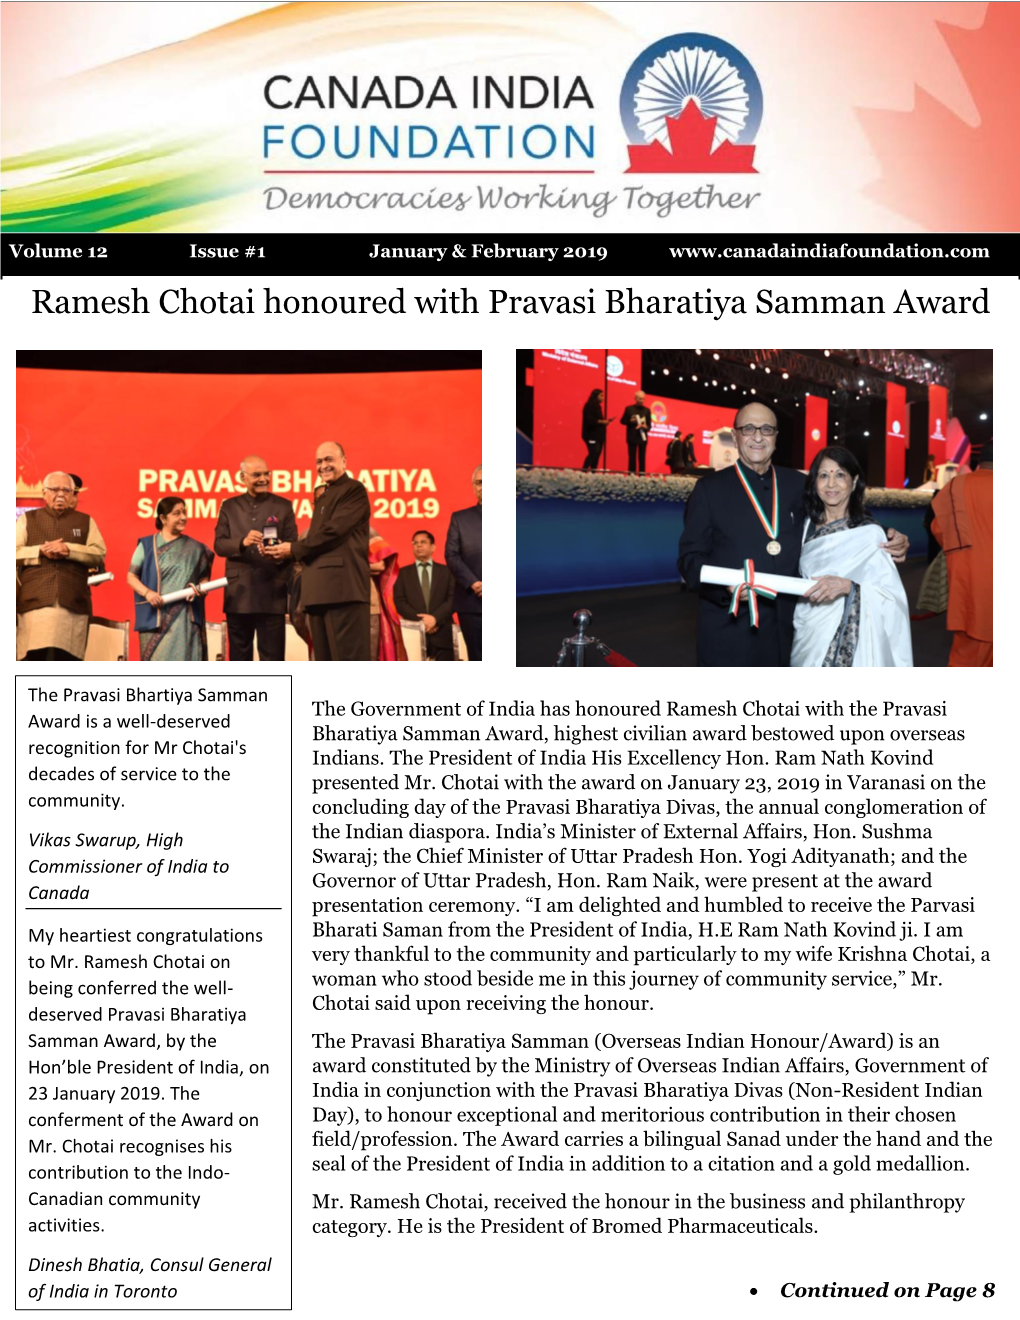 Ramesh Chotai Honoured with Pravasi Bharatiya Samman Award